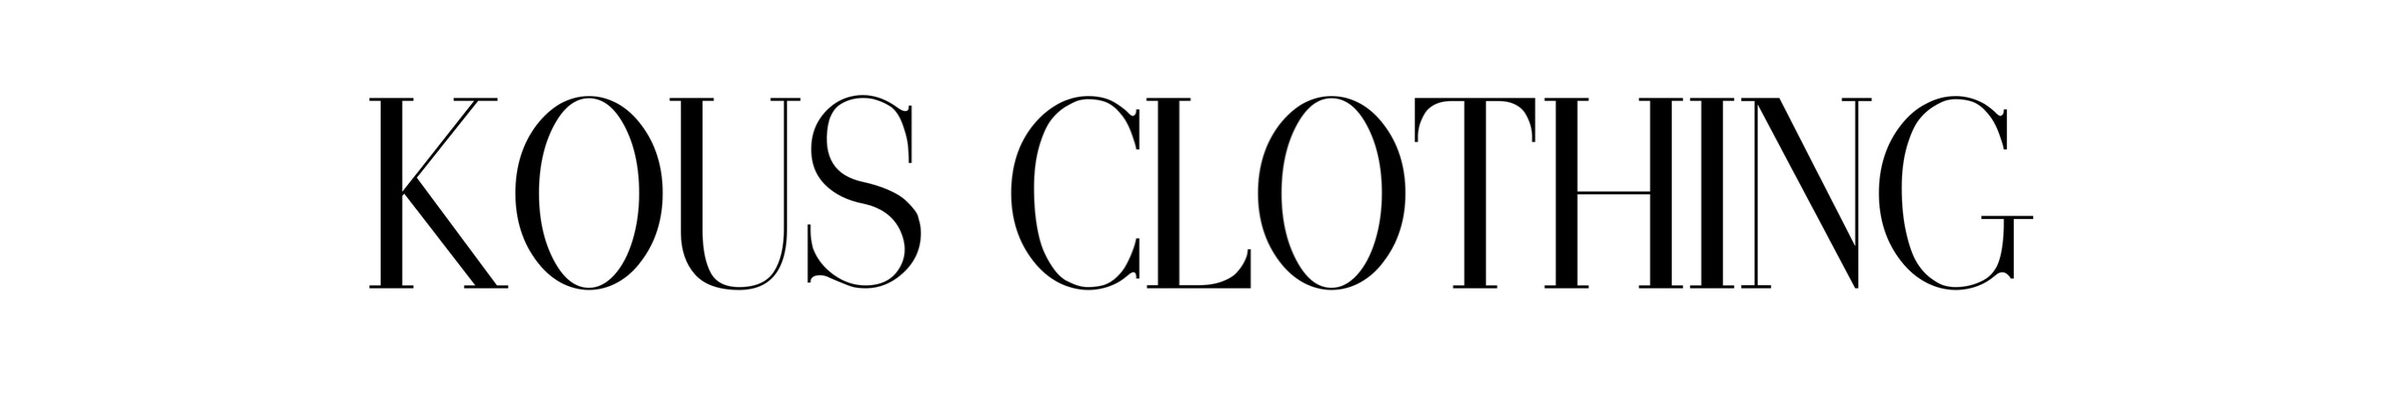 KOUS CLOTHING logo